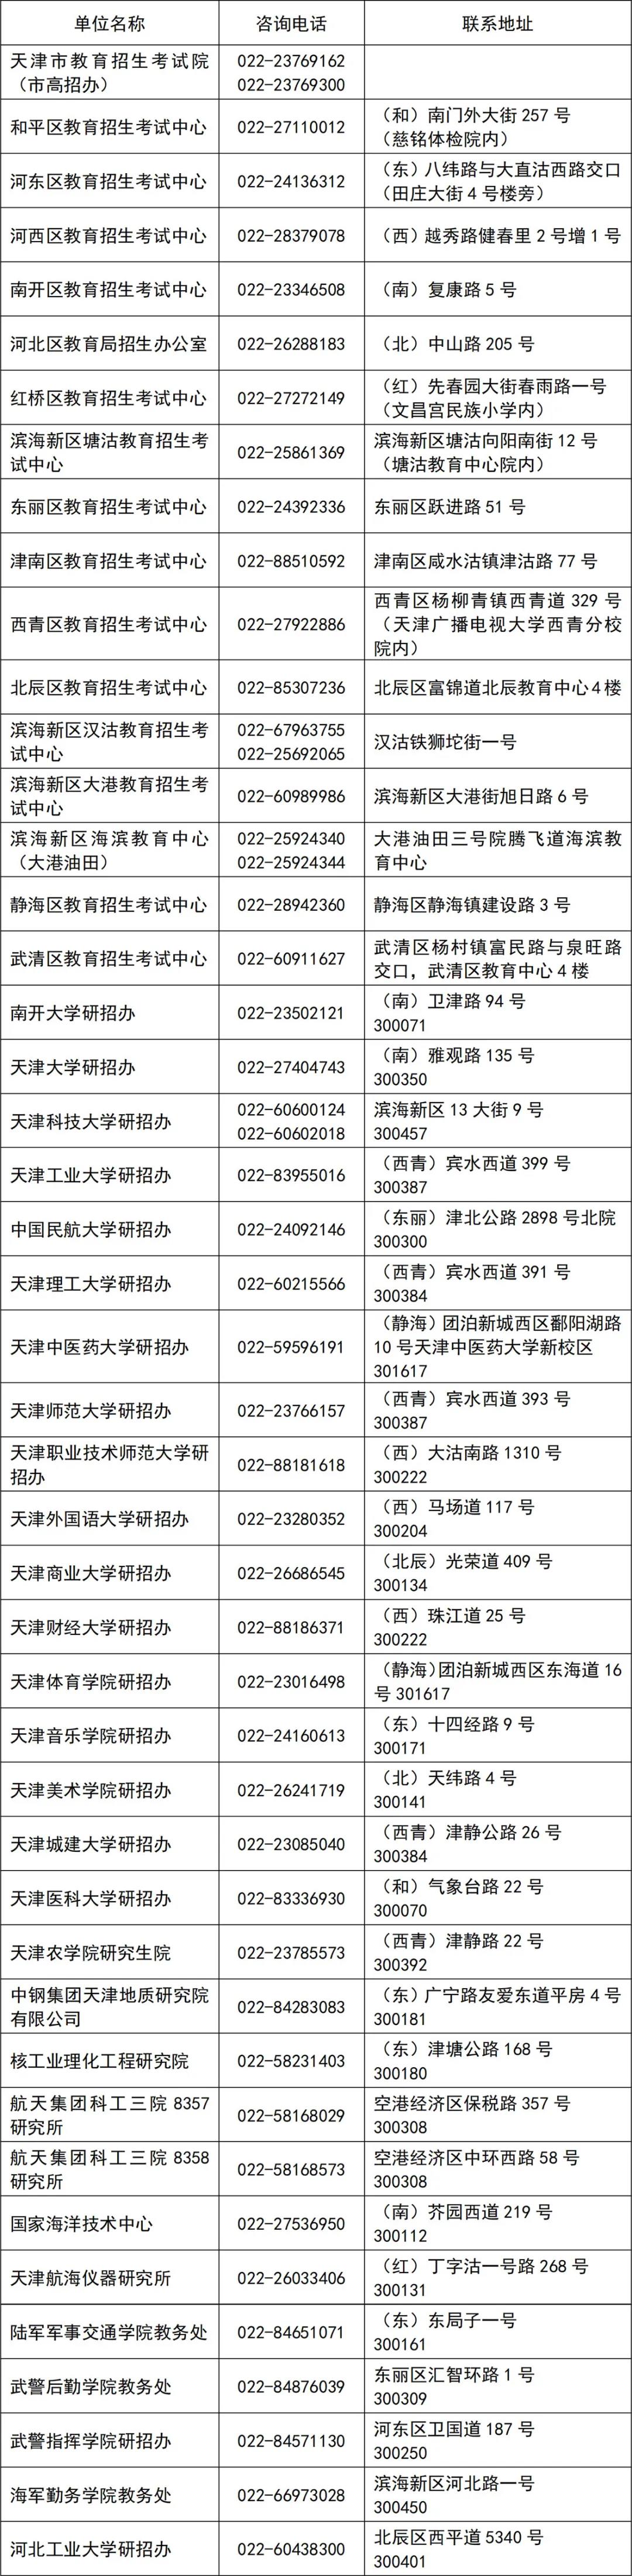 2021年天津考研共设35个报考点